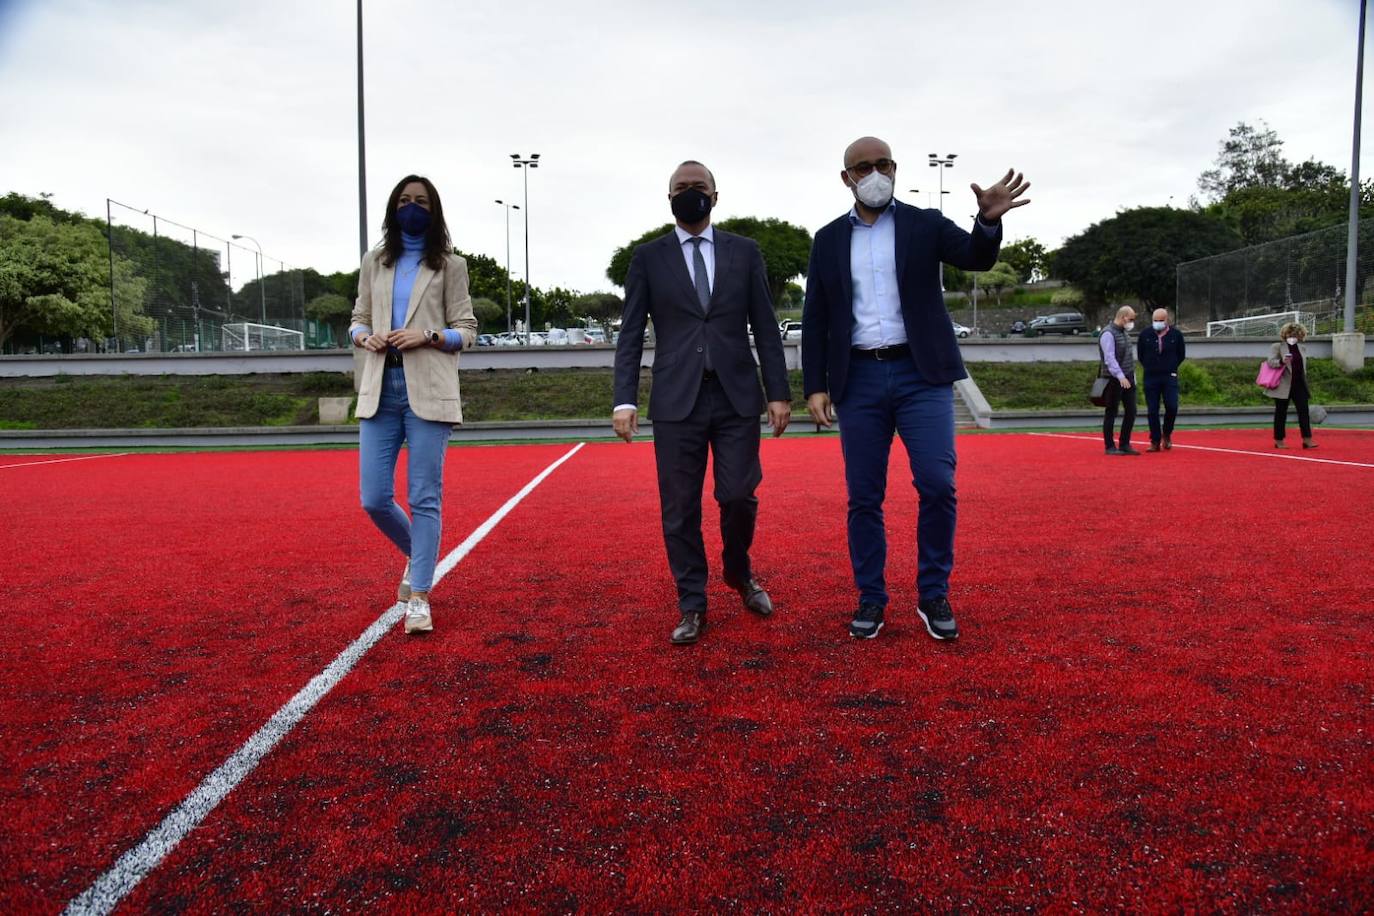 Fotos: El IMD mejora el área deportiva del parque Juan Pablo II